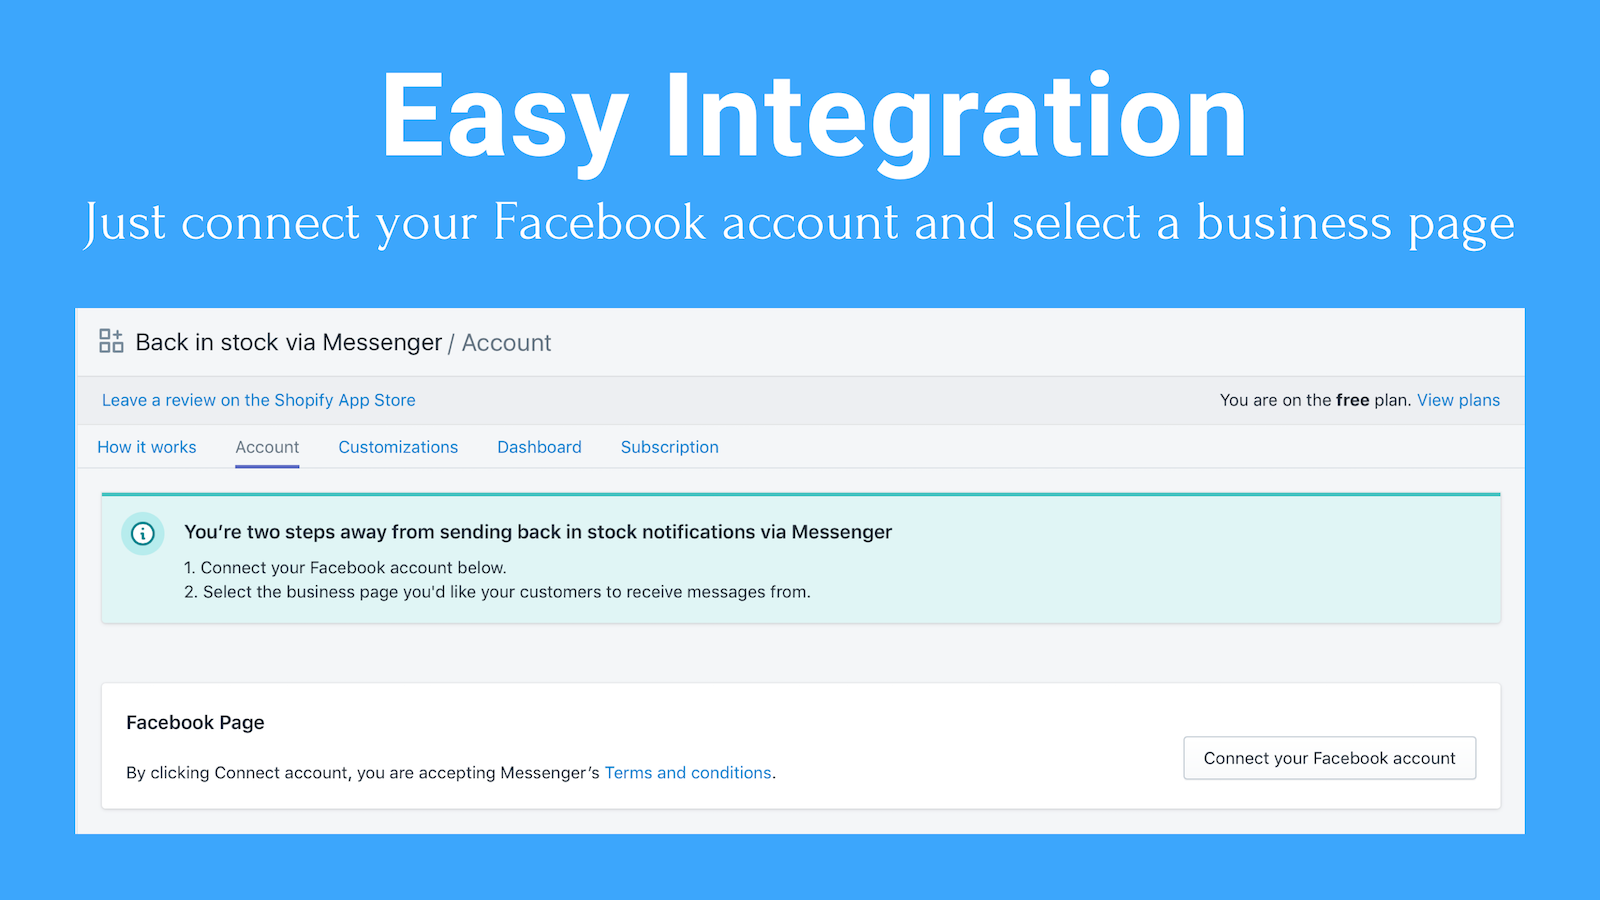 Einfache Integration: Verbinde einfach dein Facebook-Konto und wähle